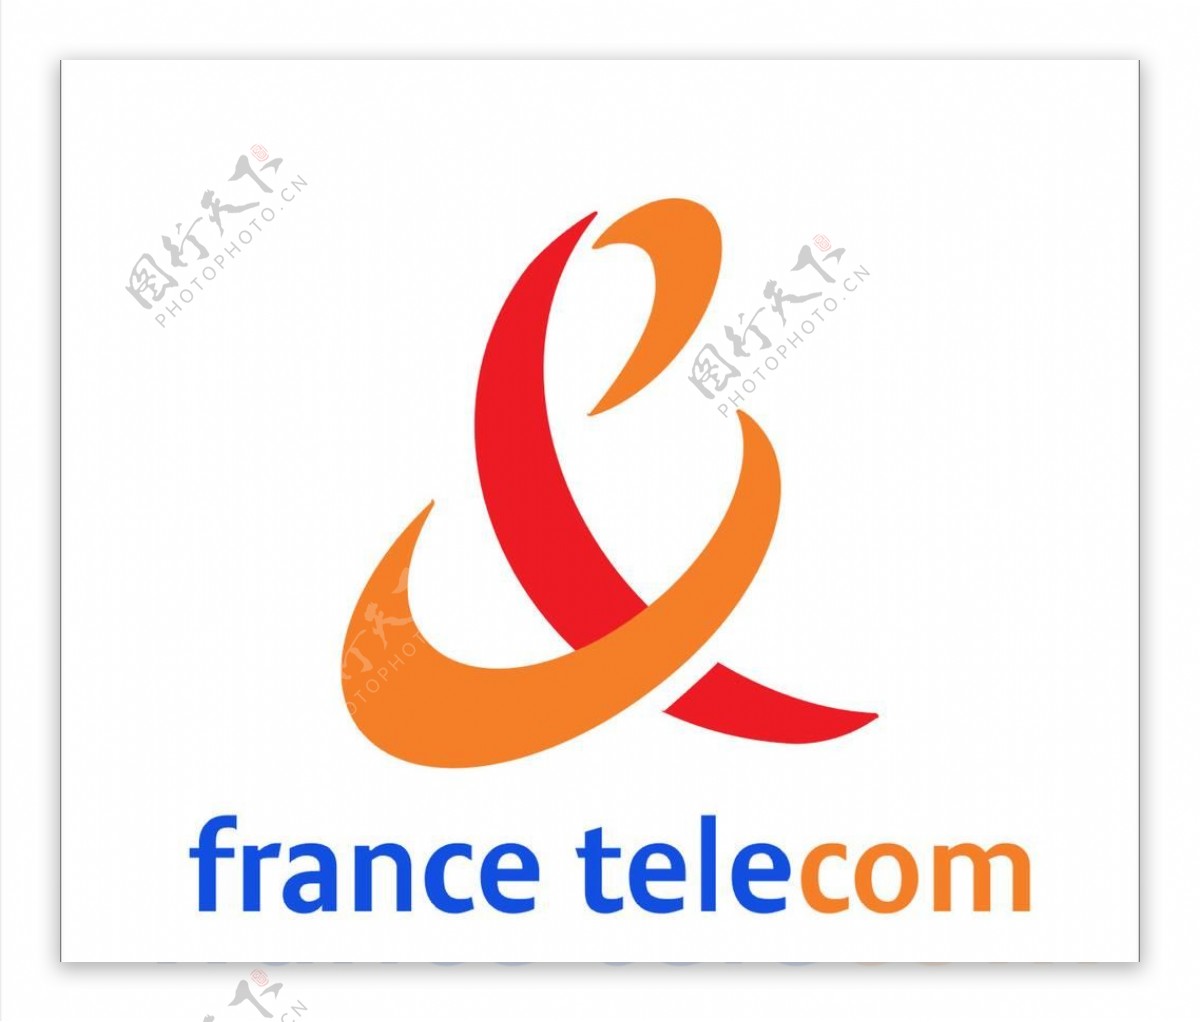 法国电信标志图片